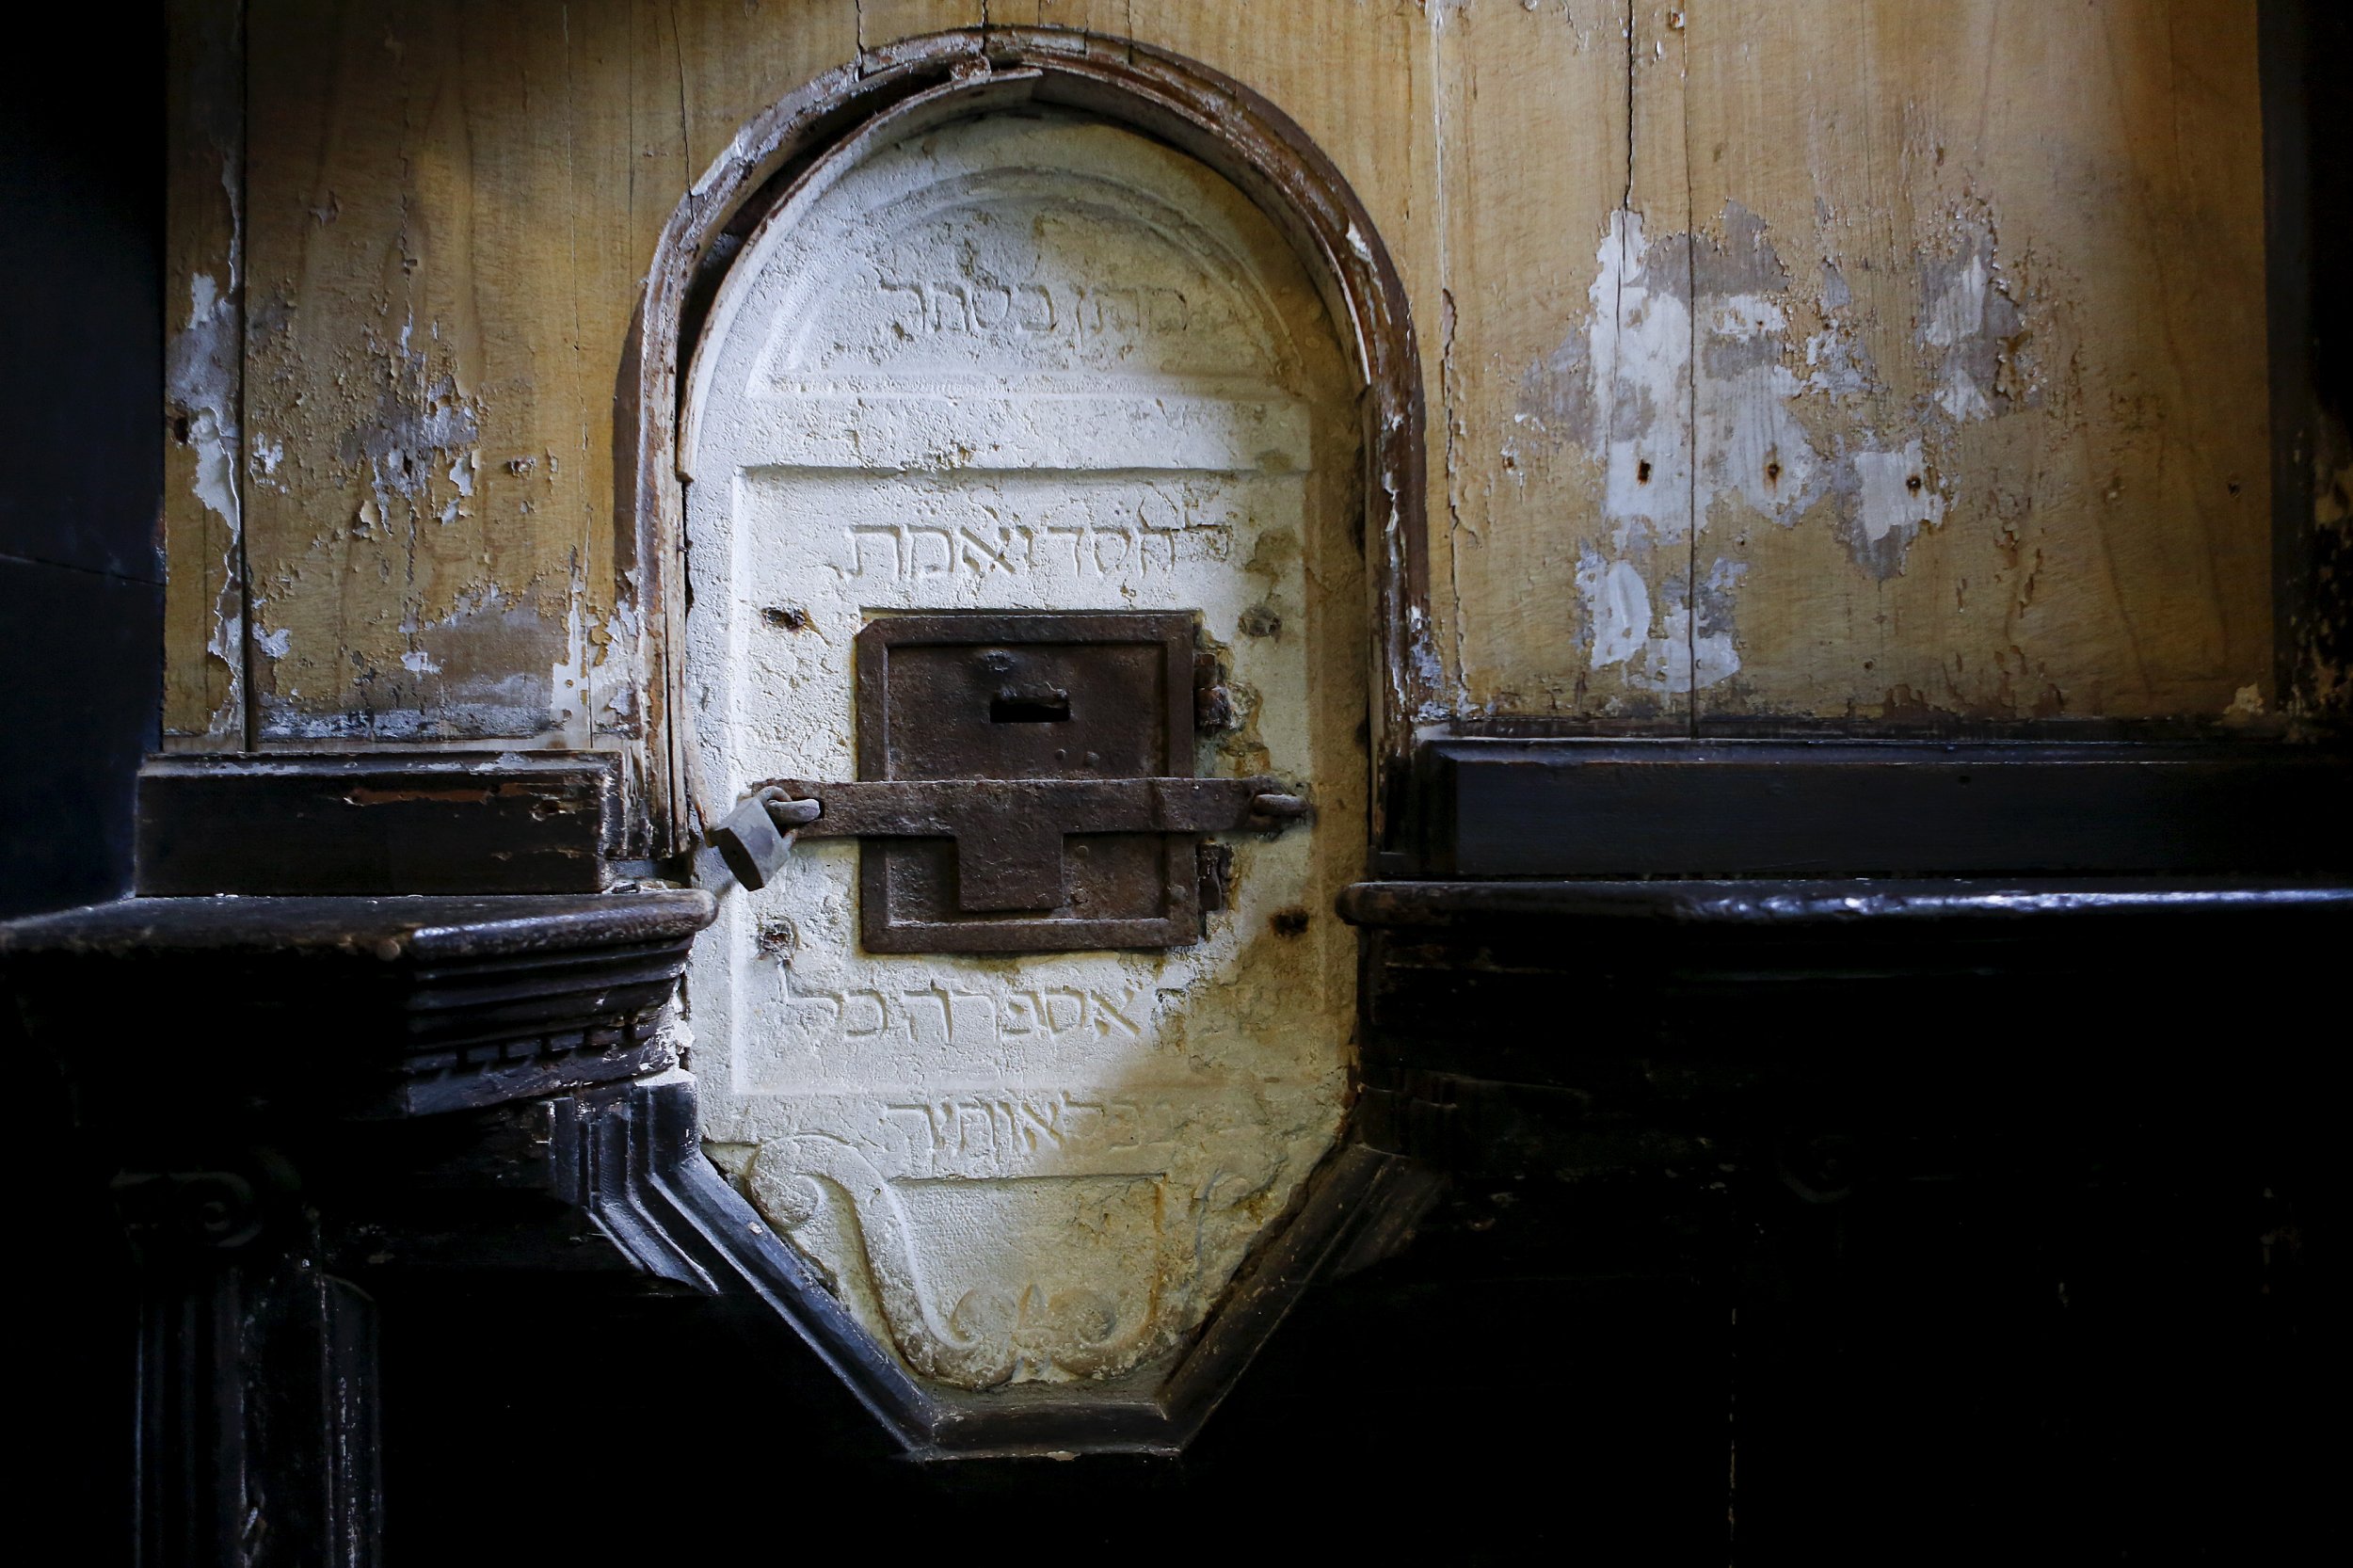 21/03/2016_Anti-Semitism Synagogue's offertory box